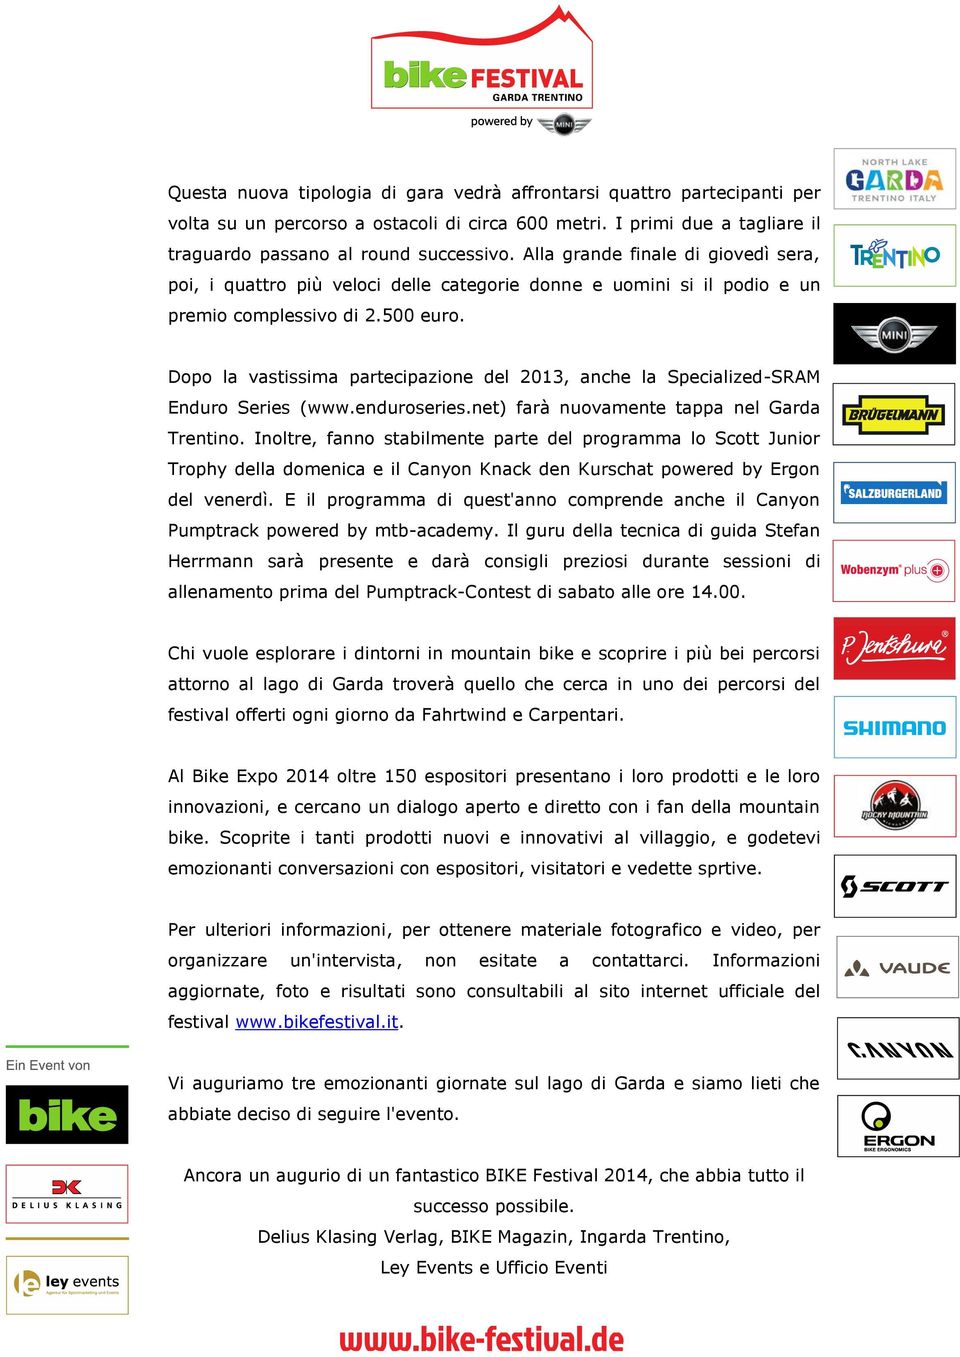 Dopo la vastissima partecipazione del 2013, anche la Specialized-SRAM Enduro Series (www.enduroseries.net) farà nuovamente tappa nel Garda Trentino.